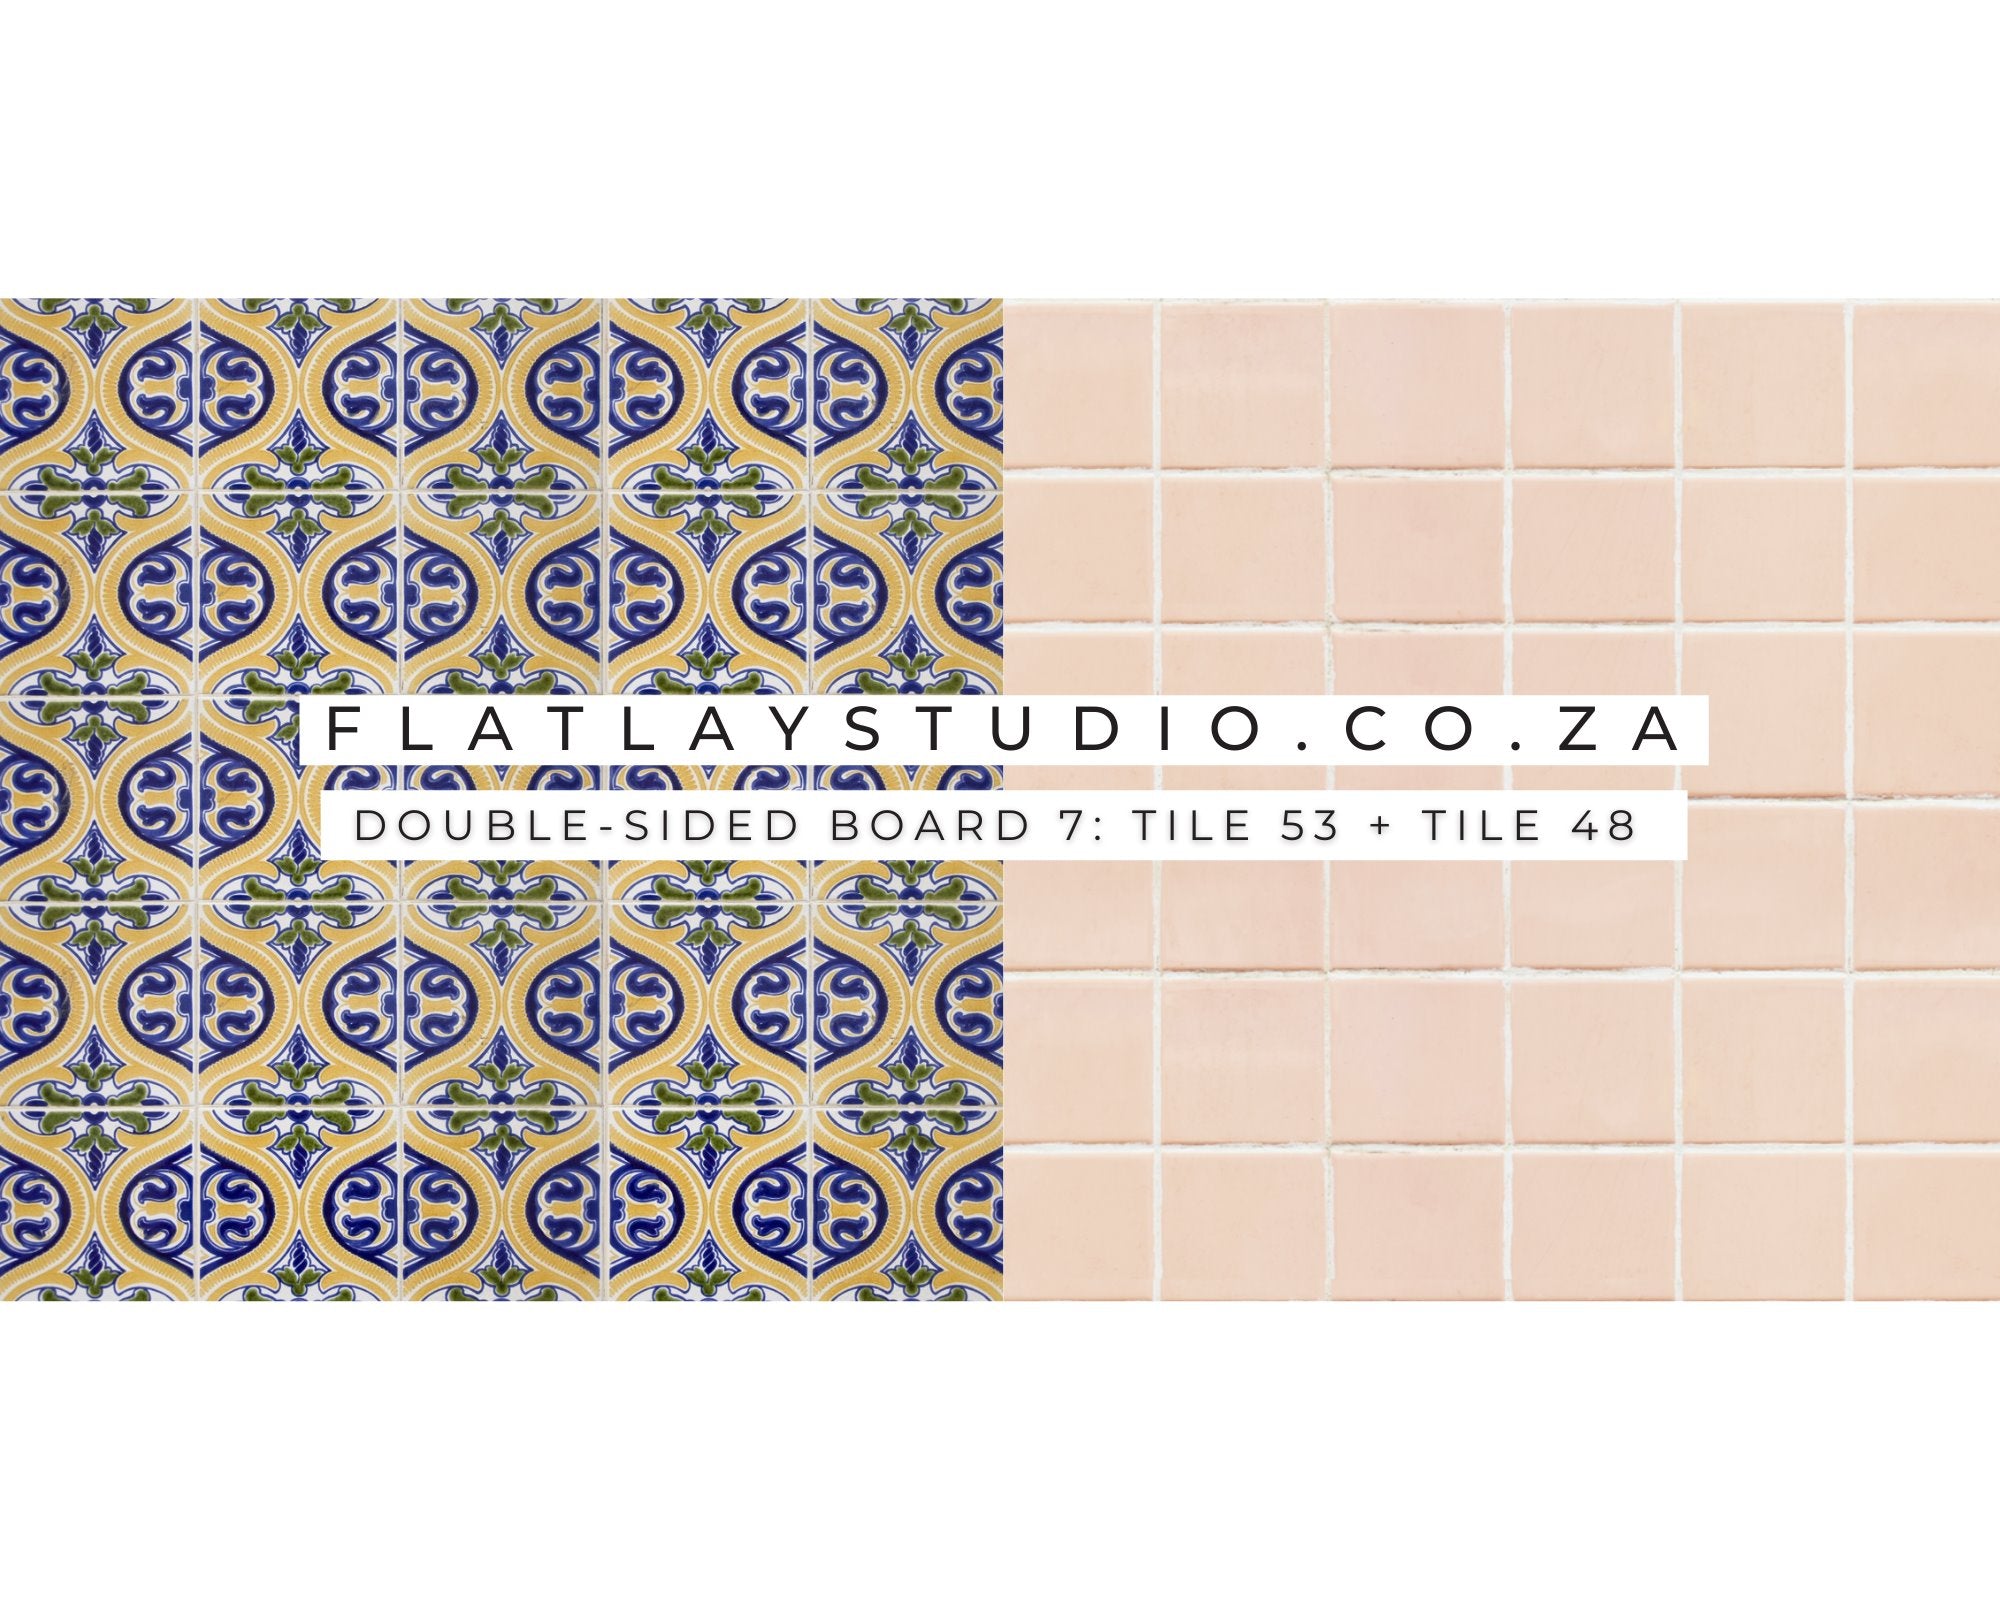 Double-sided Board 7: Tile 53 + Tile 48 - FlatlayStudio Flatlay Styling Board